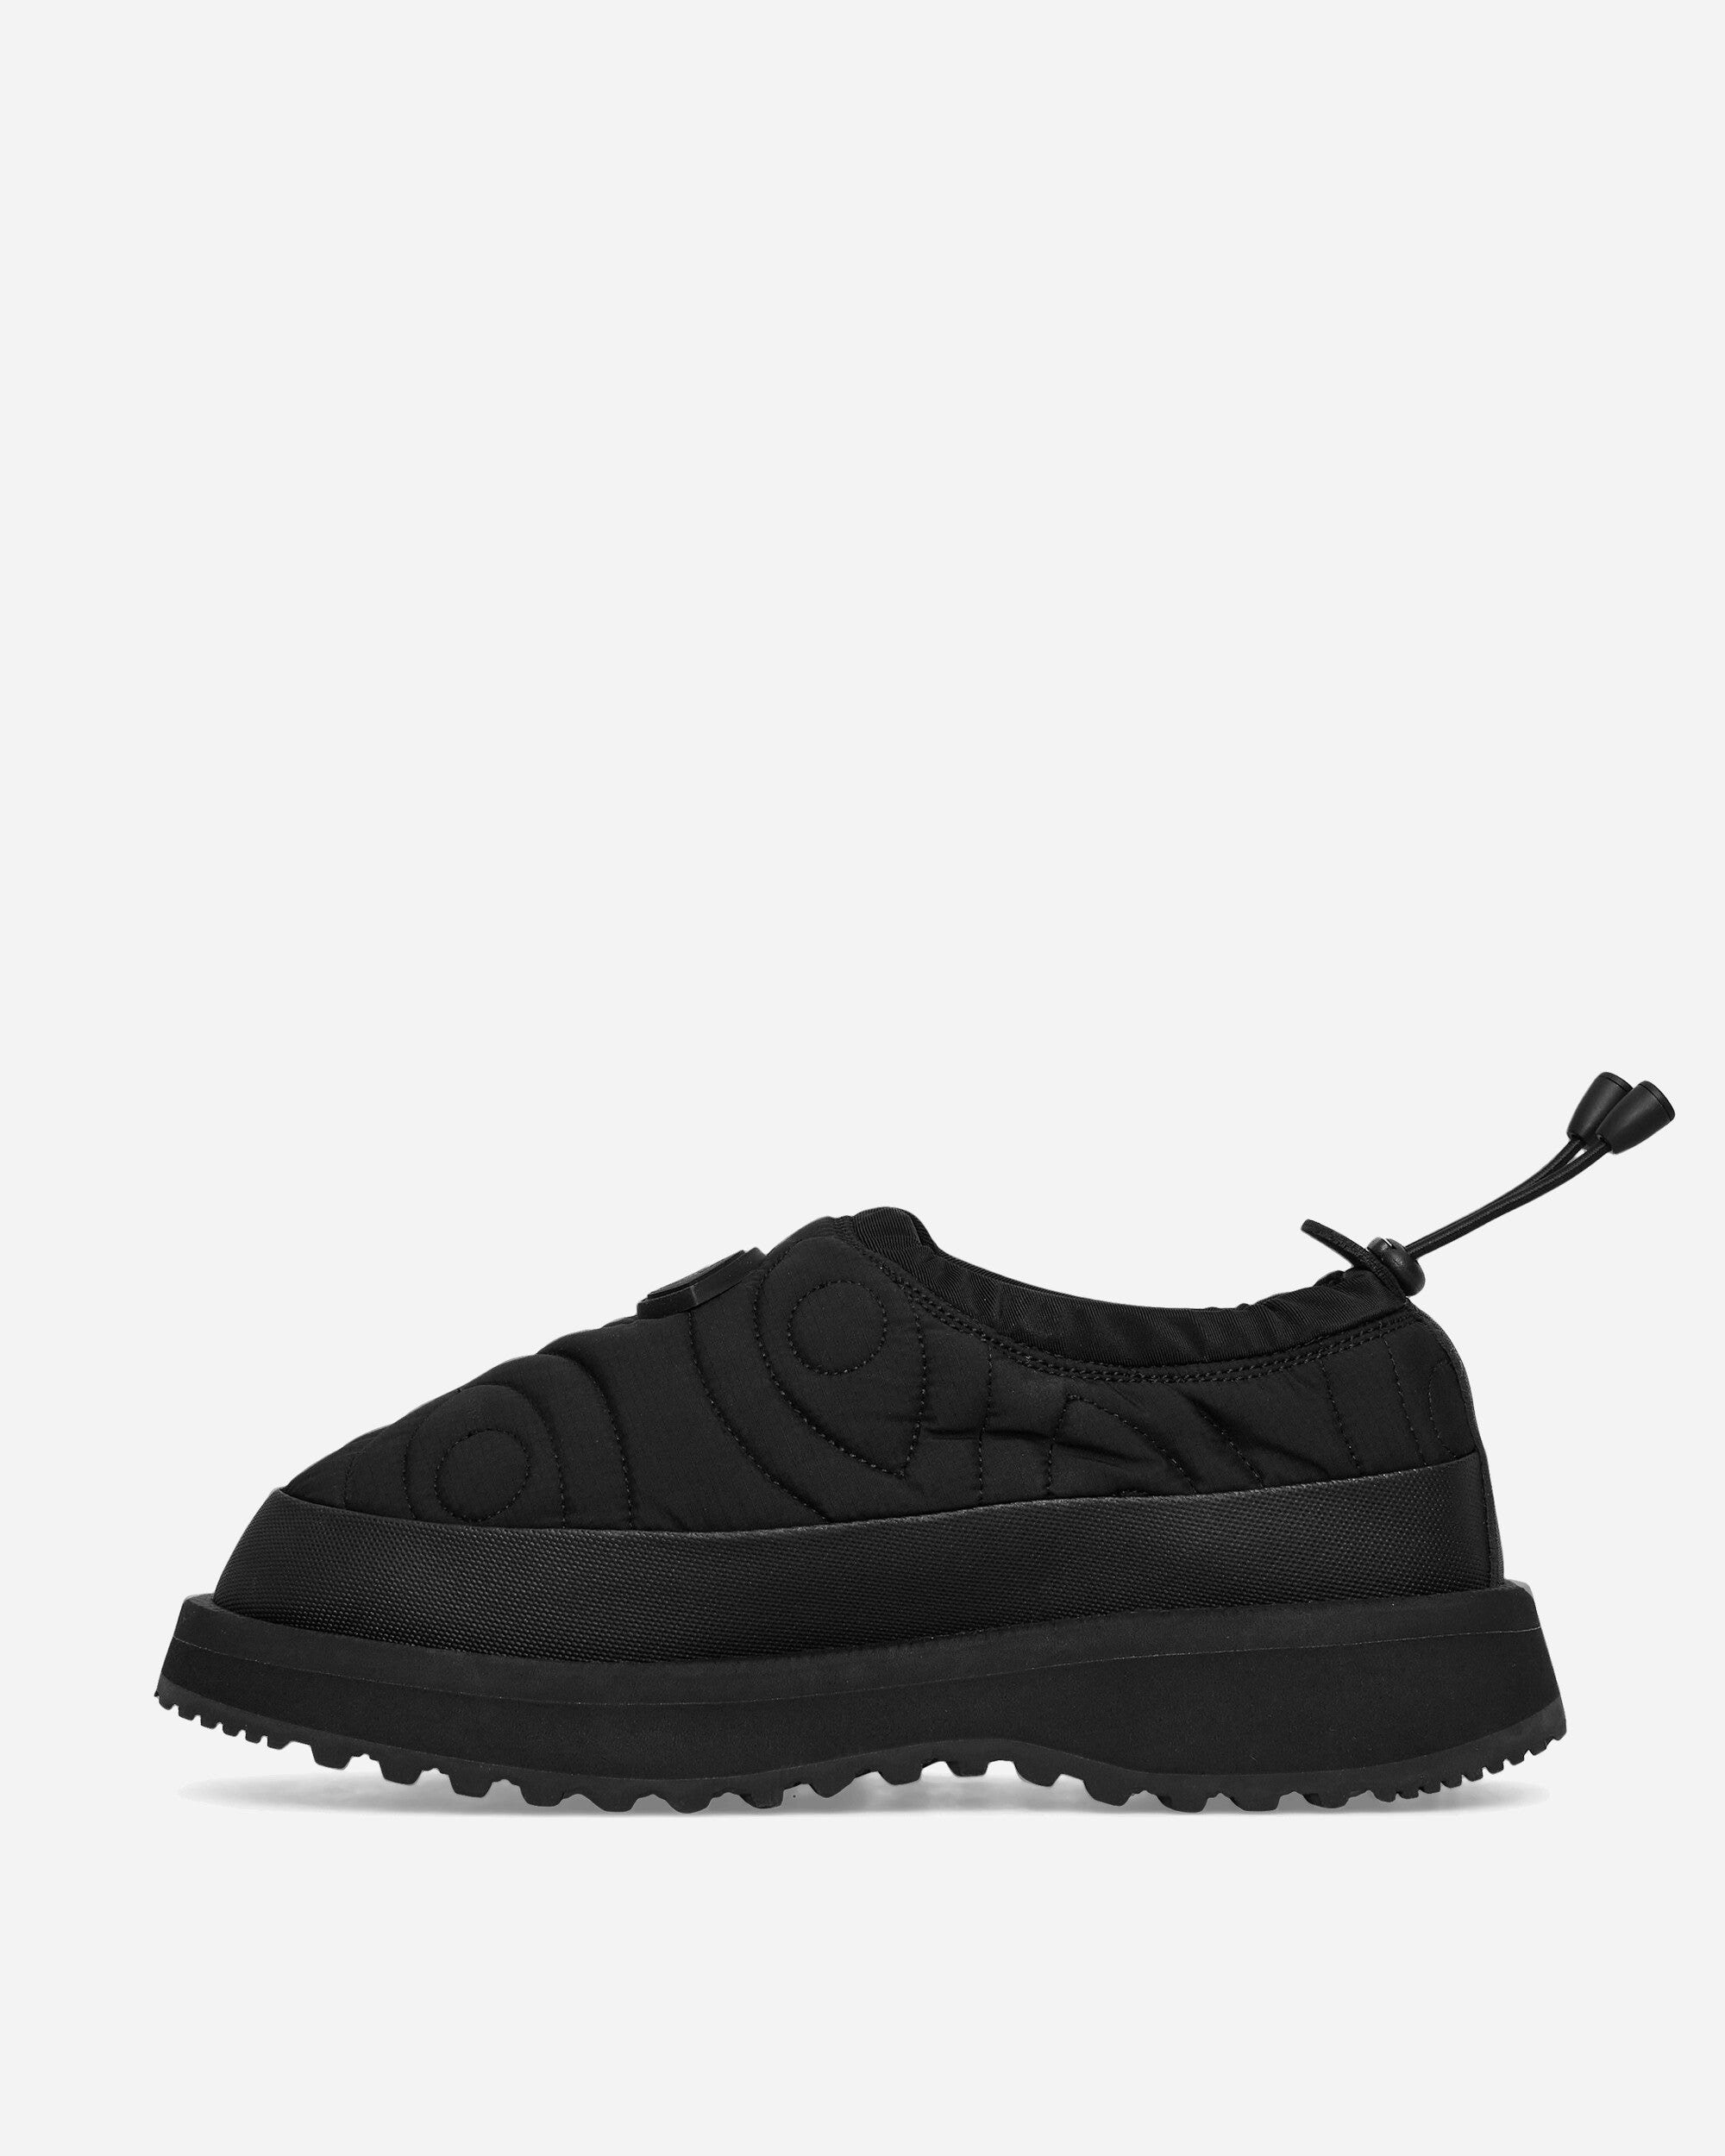 District Vision Pepper-Ab-Dvn-A Black Sandals and Slides Sandals and Mules OG-352ab-A BLACK